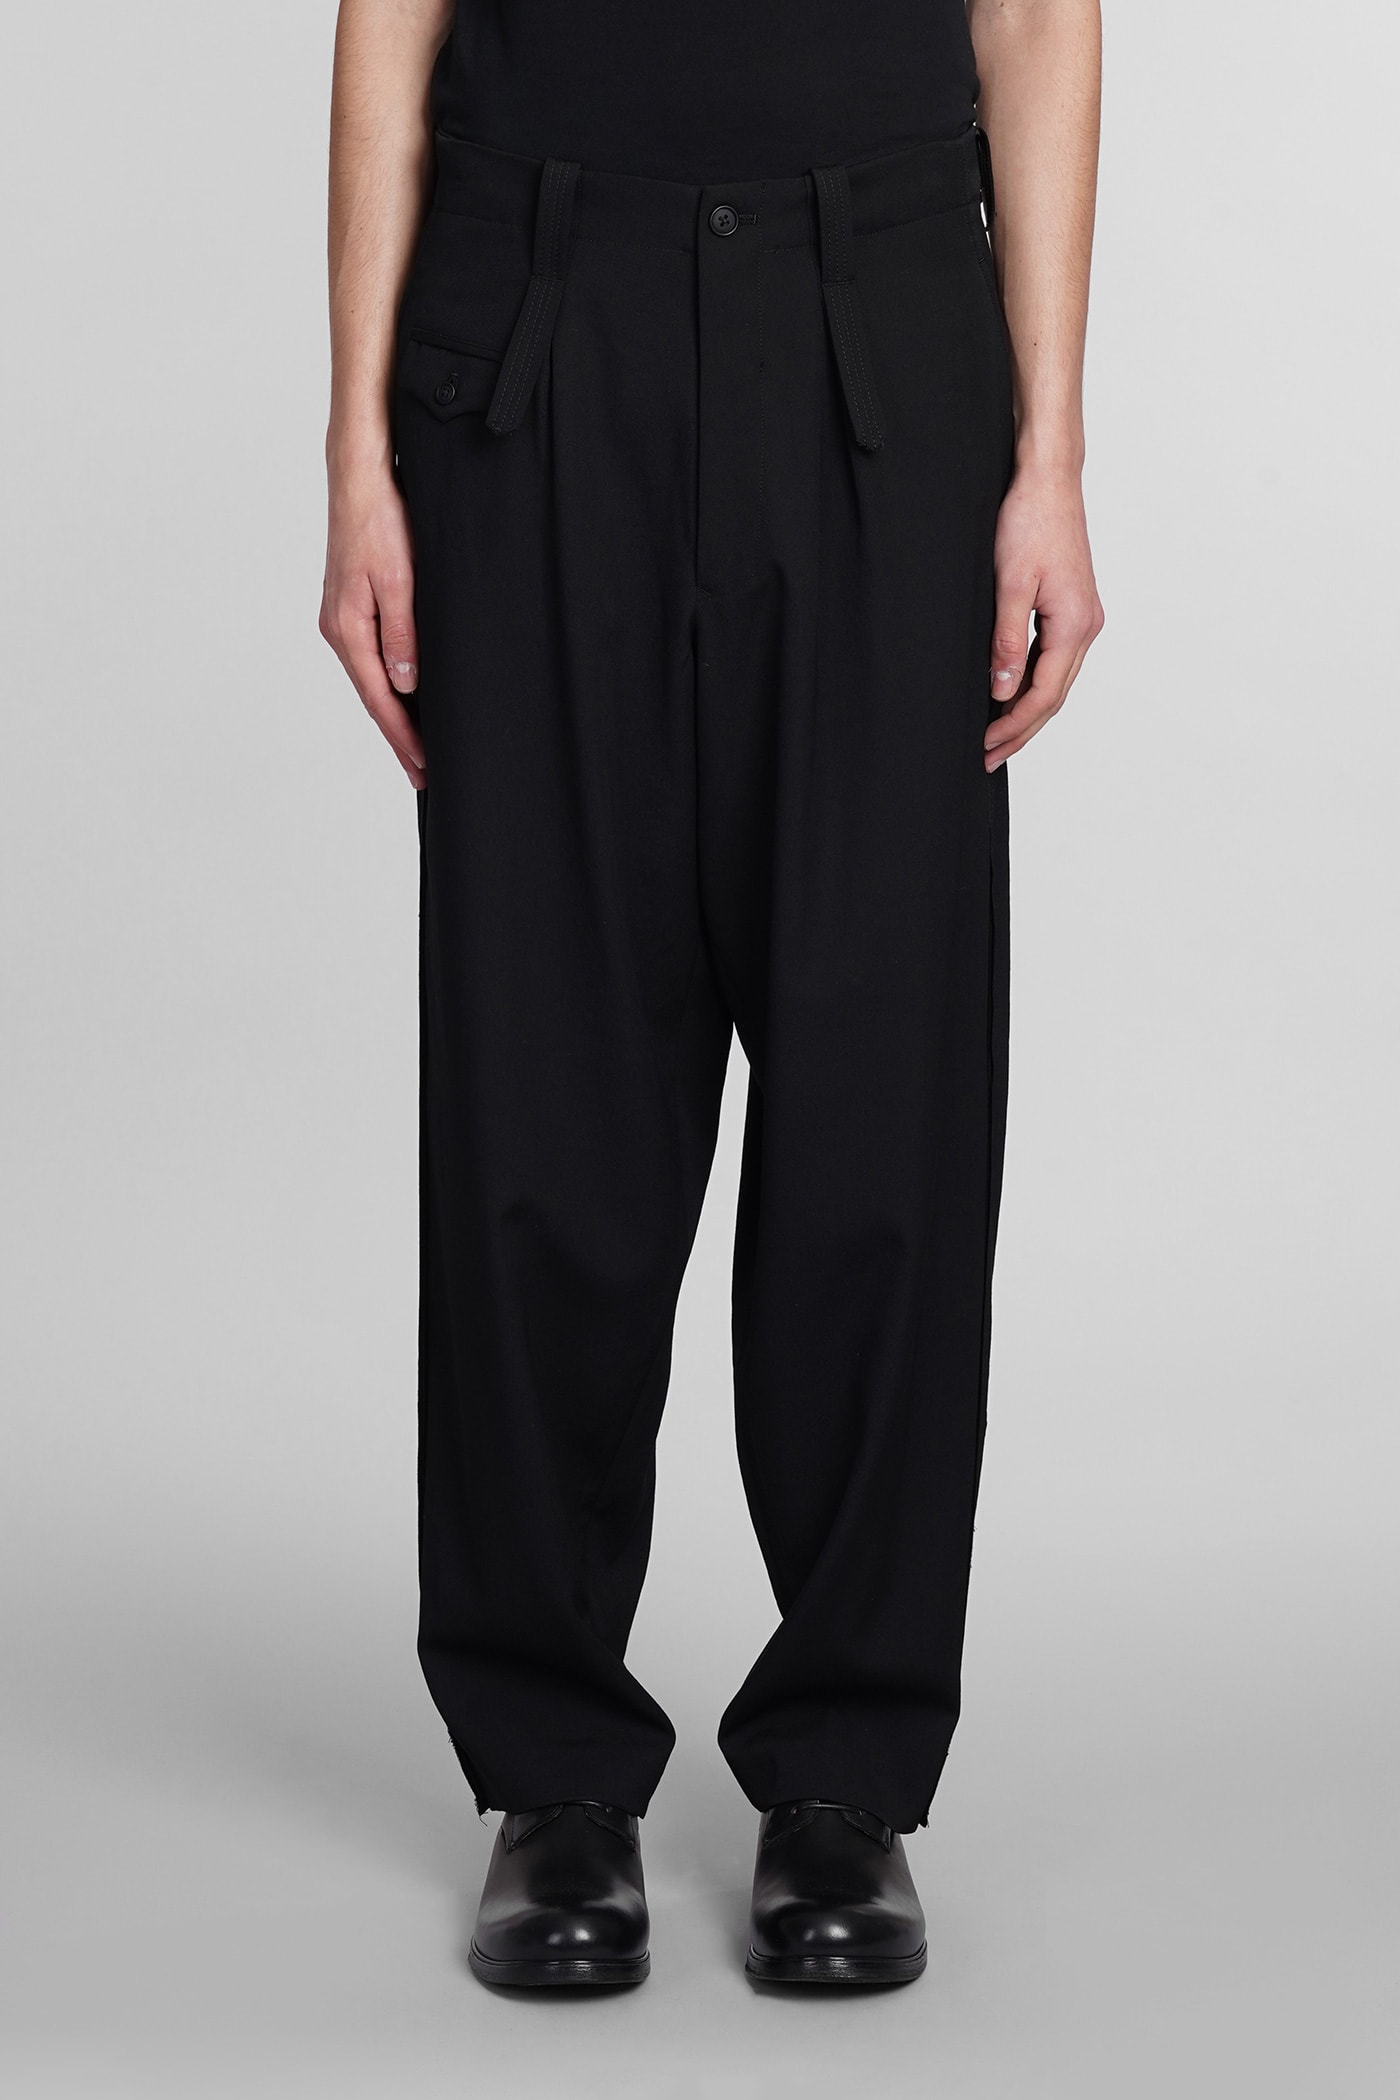 Yohji Yamamoto Trousers In Black Wool